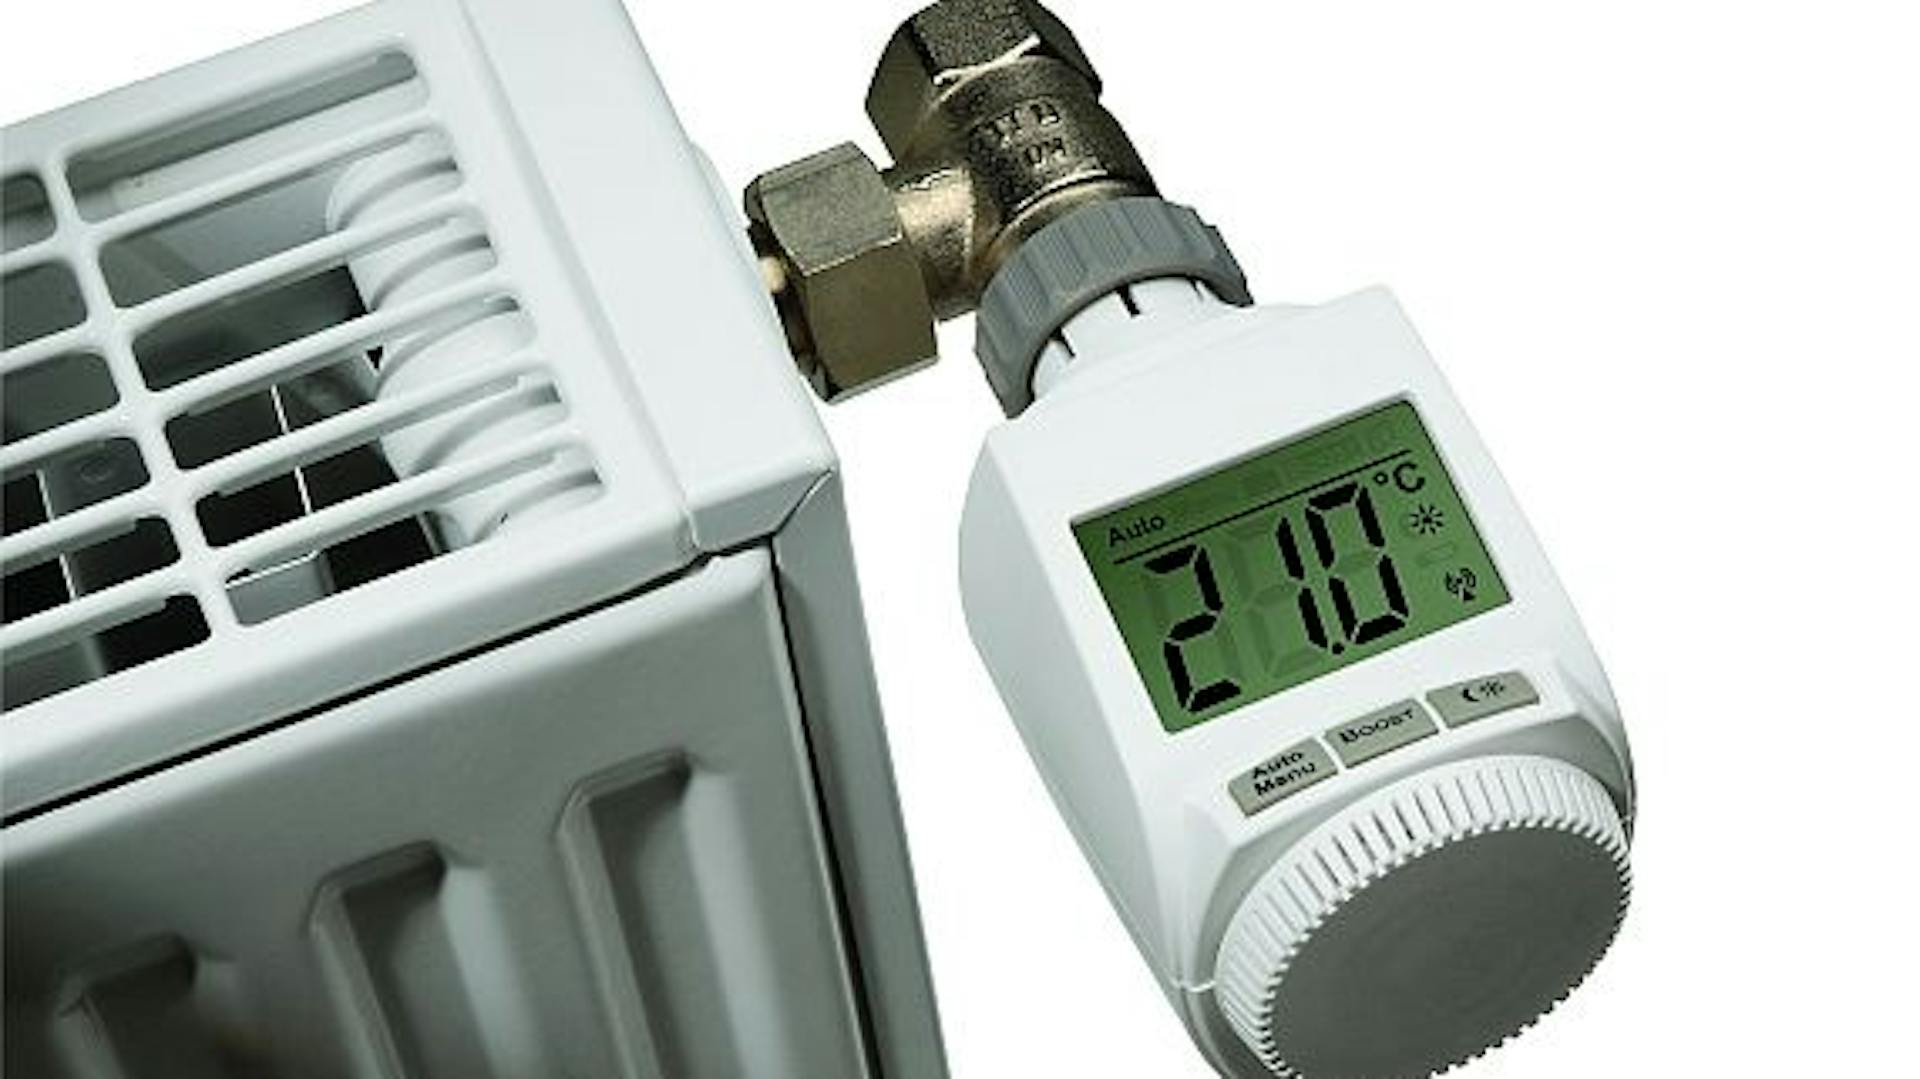 Heizung: Thermostat einstellen & bedienen